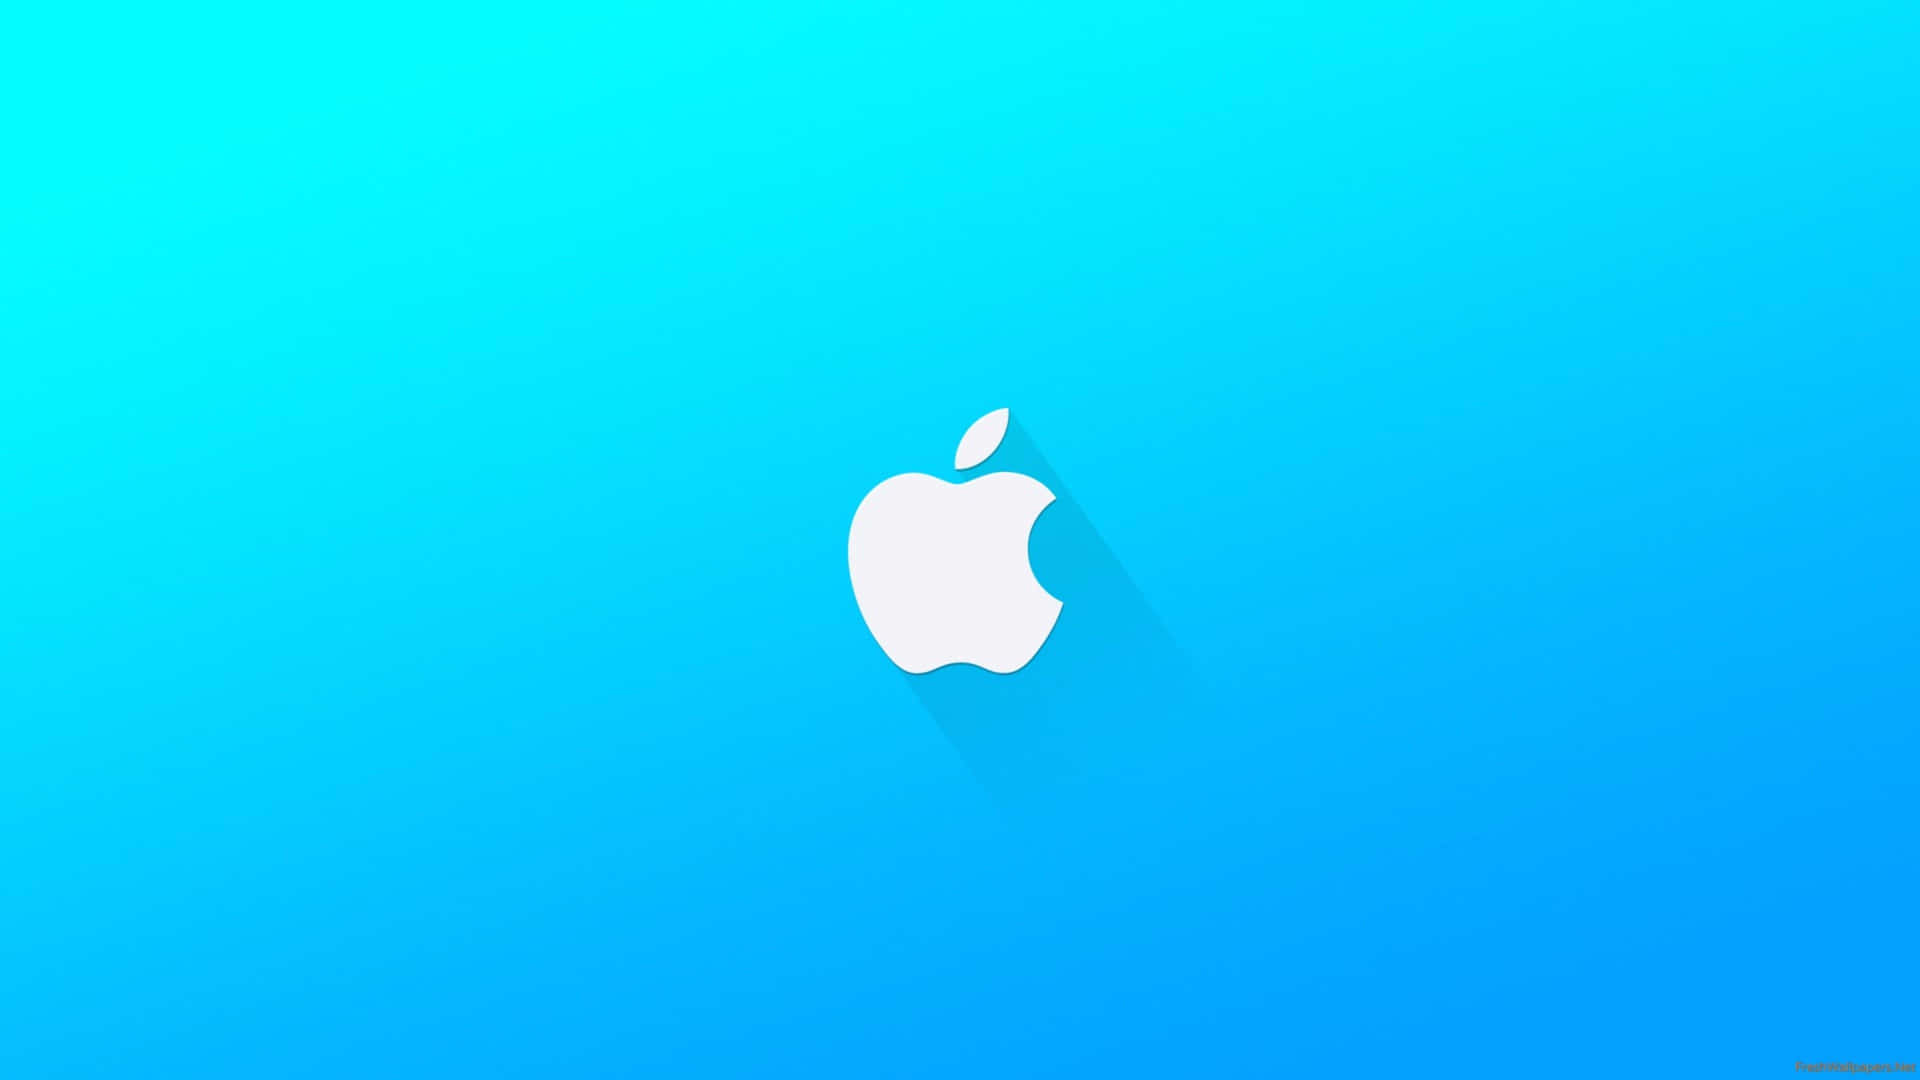 100+] Apple 4K Wallpapers | Wallpapers.Com